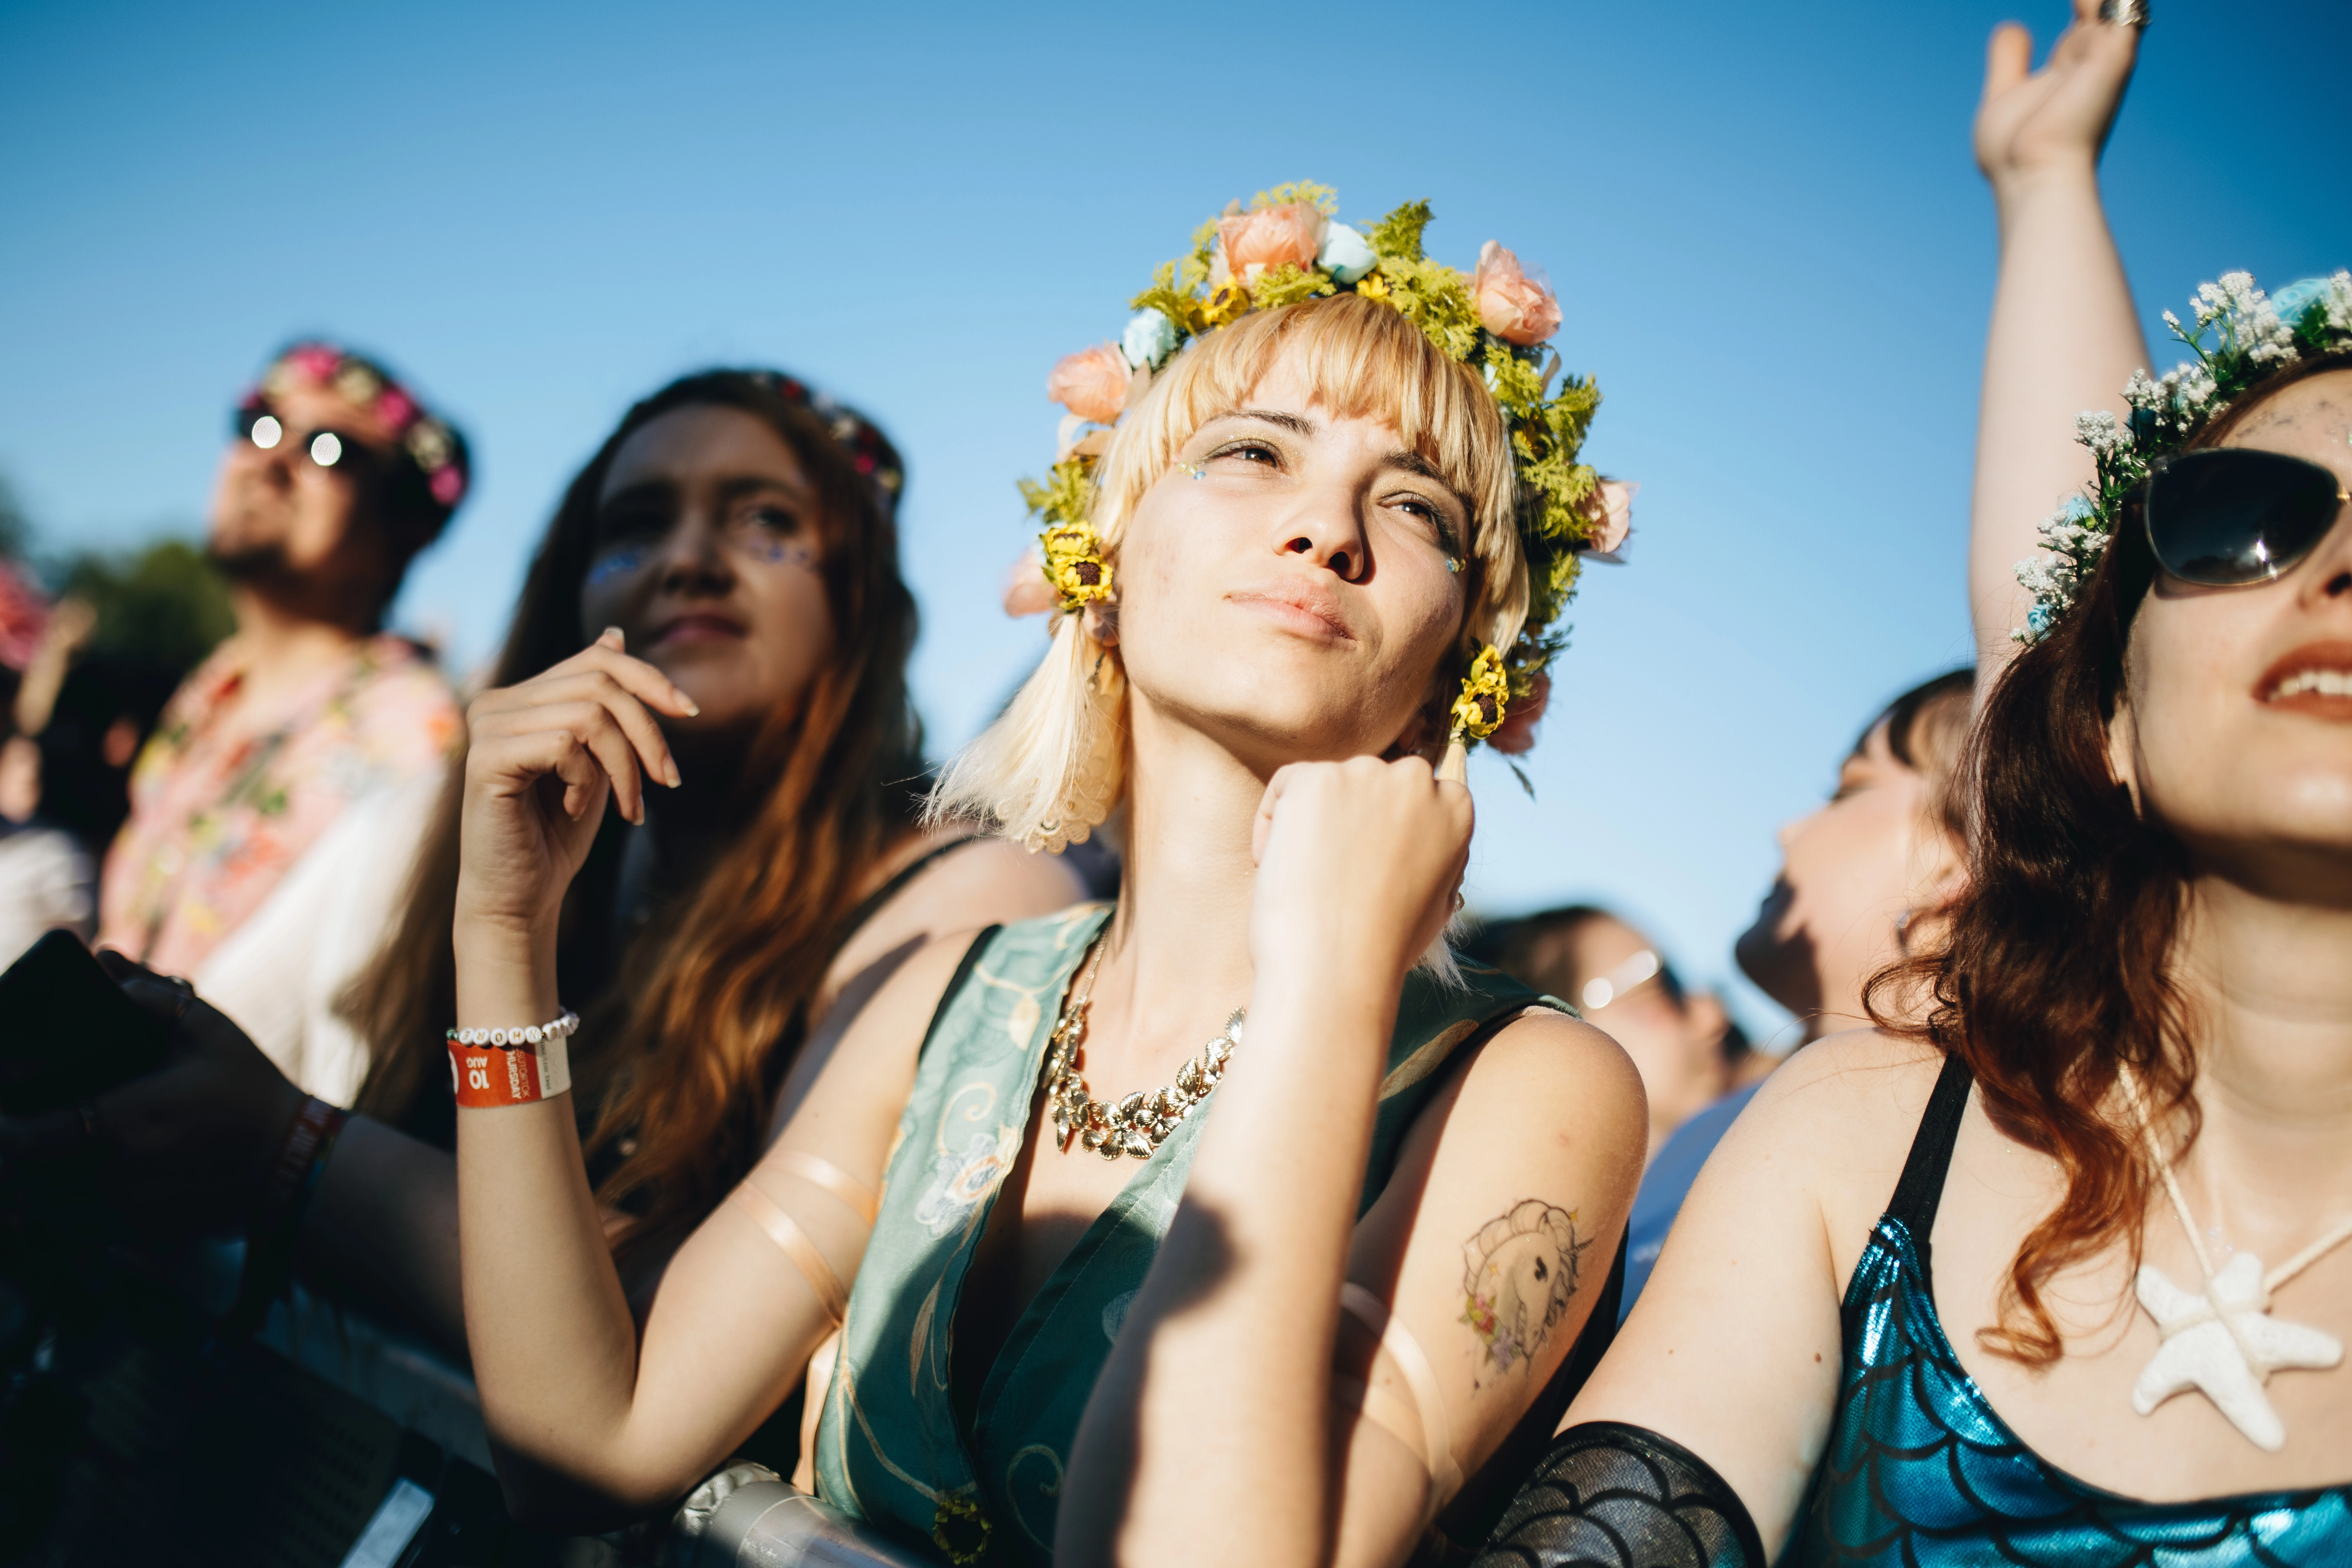  Több mint Woodstock, több mint szerelem - fotóink a Sziget első napjáról